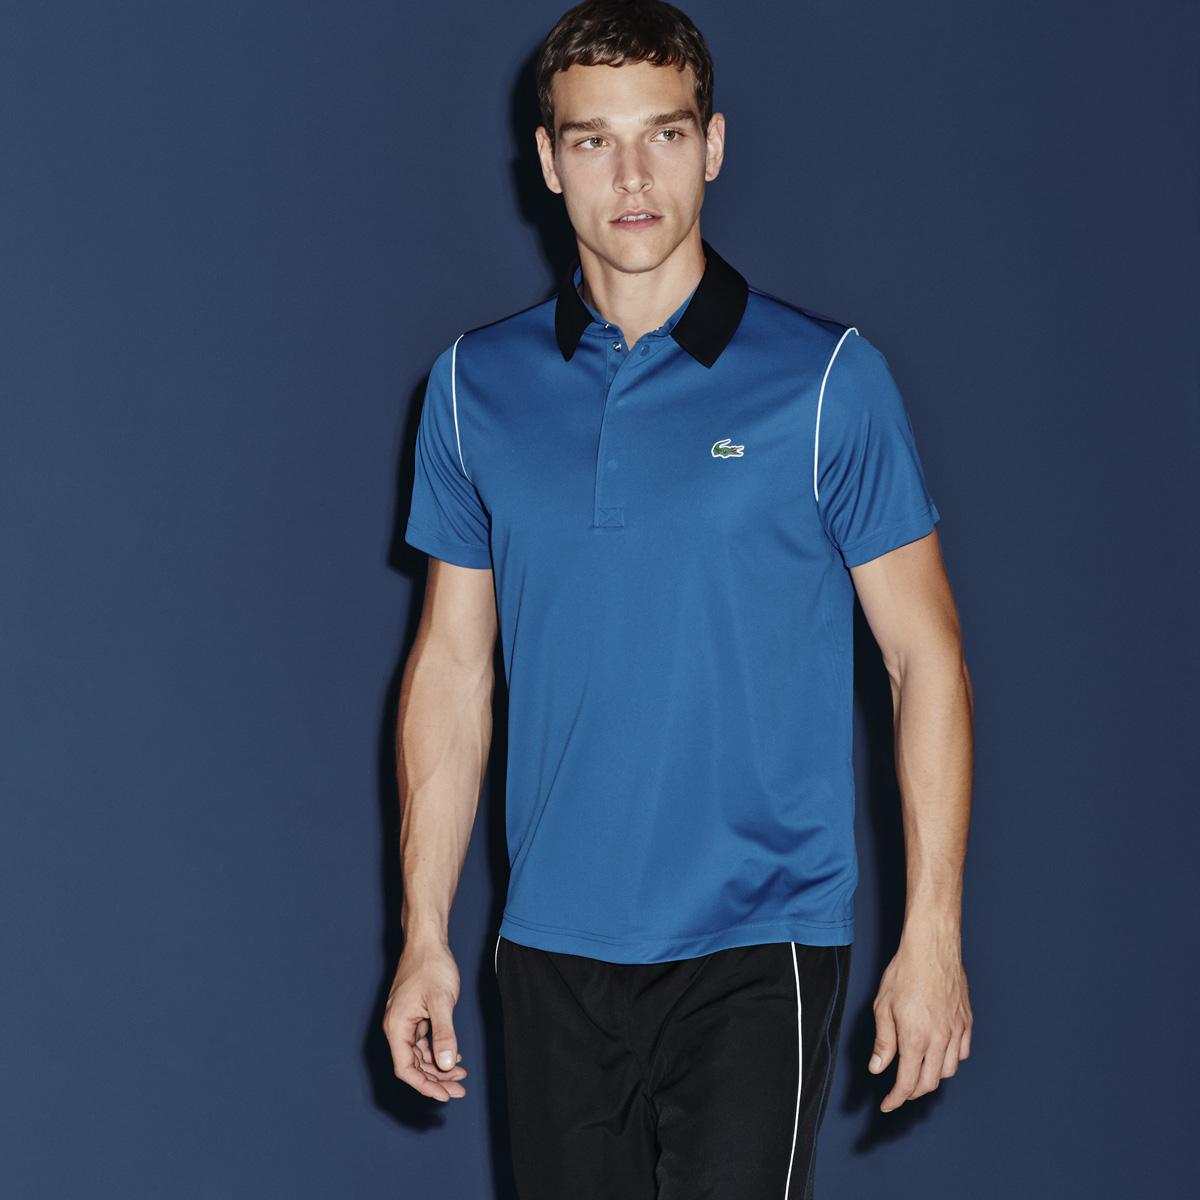 Lacoste Sport Mens Short Sleeve Polo - Laser Blue/Black - Tennisnuts.com